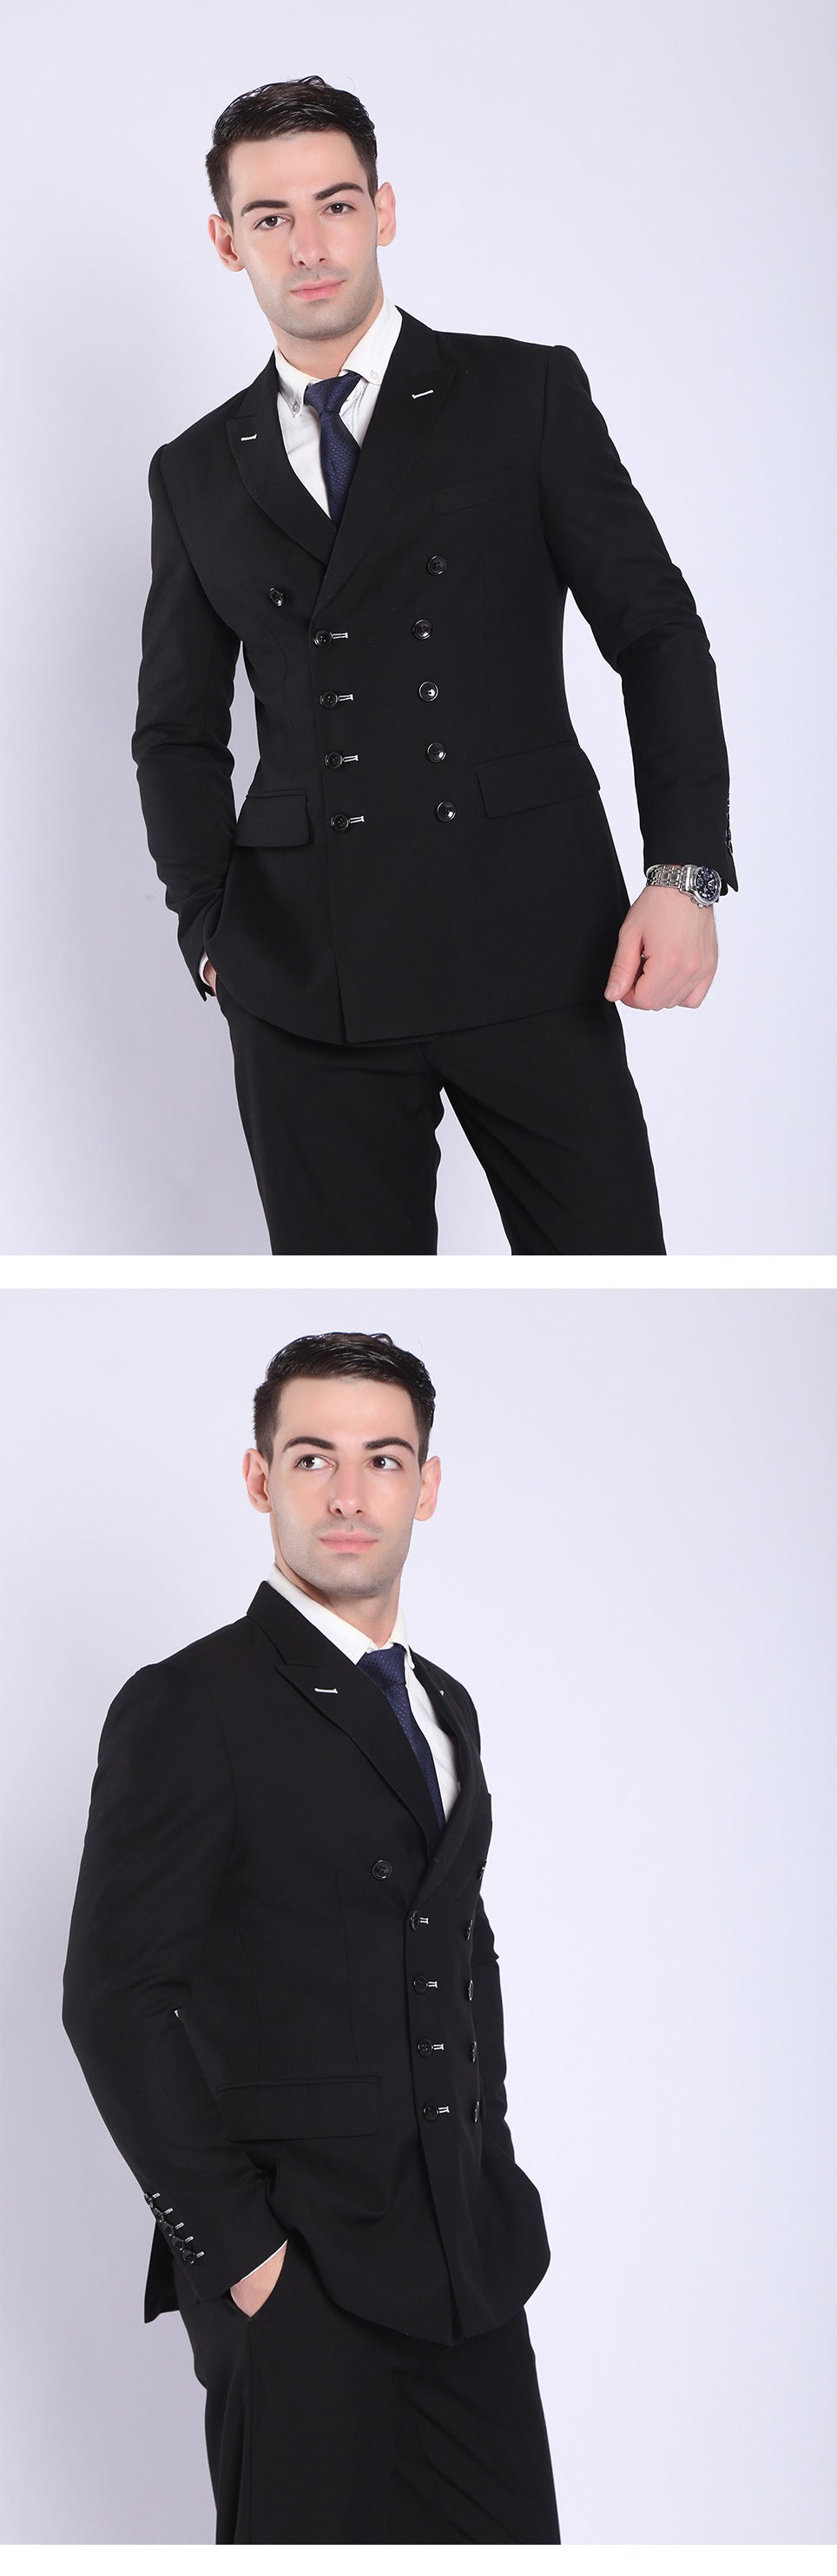 Men's professional business suits